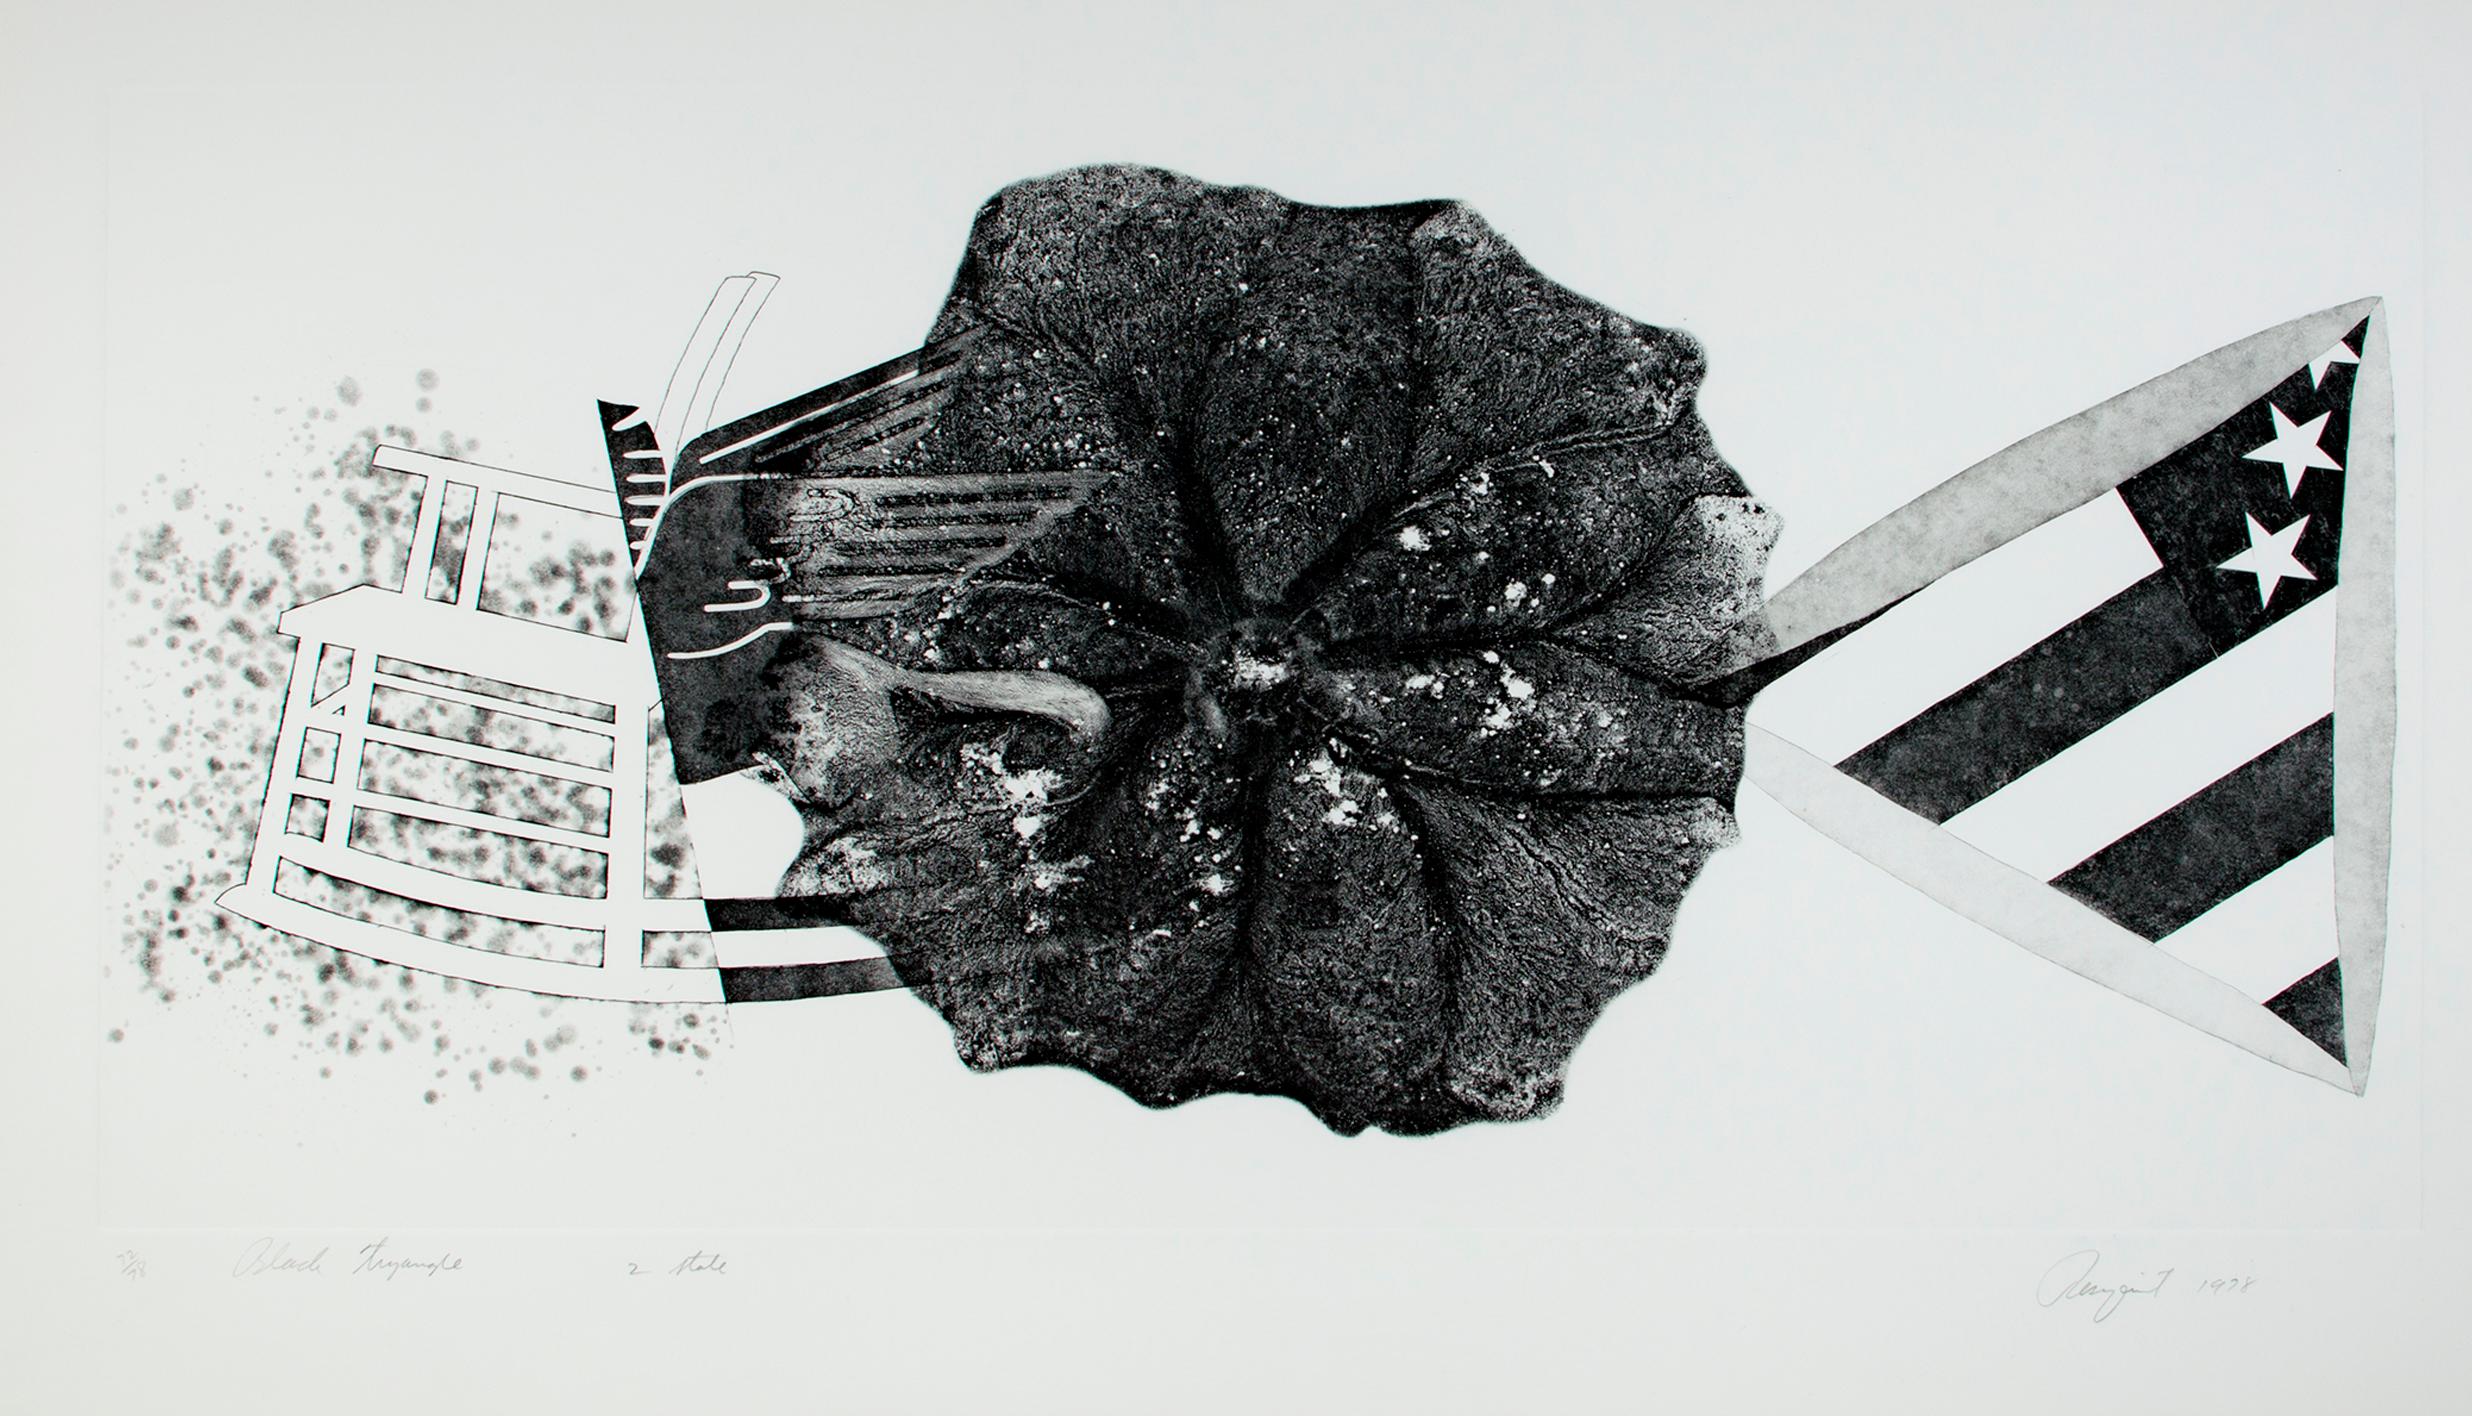 "Black Triangle" est une gravure originale en noir de l'artiste pop James Rosenquist. L'artiste a signé l'œuvre en bas à droite, a écrit le titre et le numéro d'édition (72/78) en bas à gauche, et "2nd State" en bas au centre. Cette pièce fait